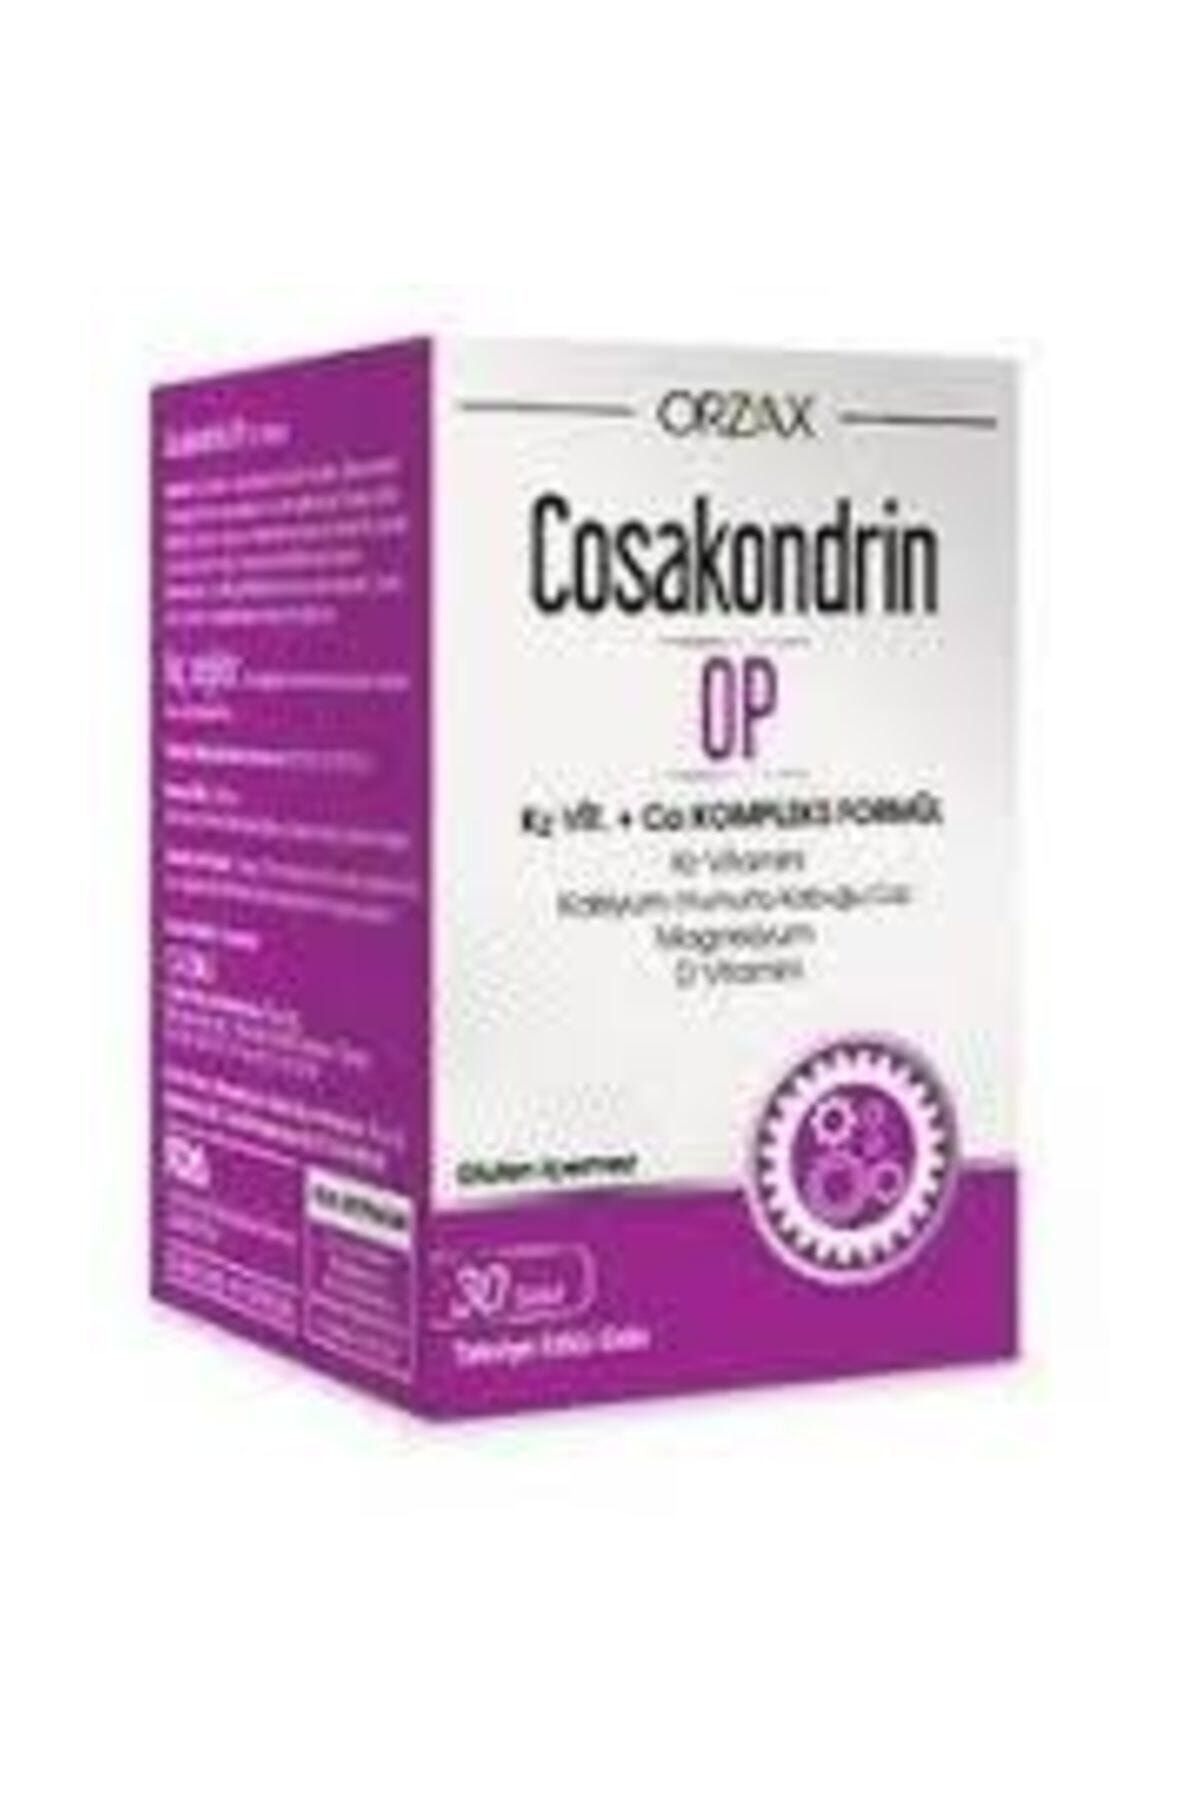 Cosakondrin Op 30 Tablet 440011